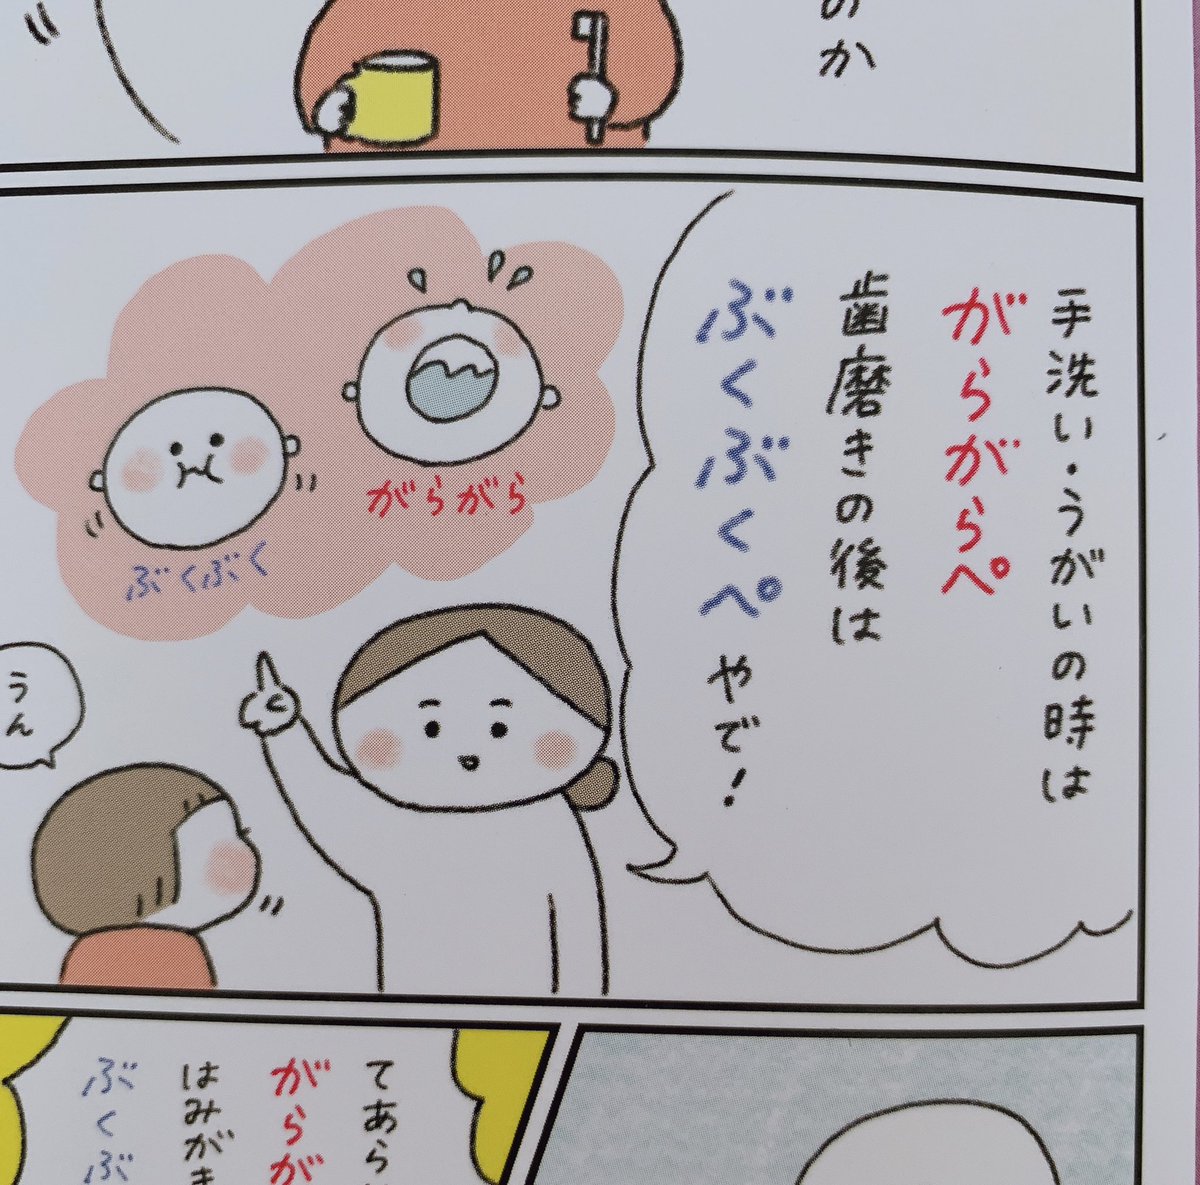 【お仕事】Gakkenさん「よいこのくに」でマンガを描かせていただいてます!6月号は、うがいの話。お子さんが園から持ち帰られたらぜひ探してみてください〜! 